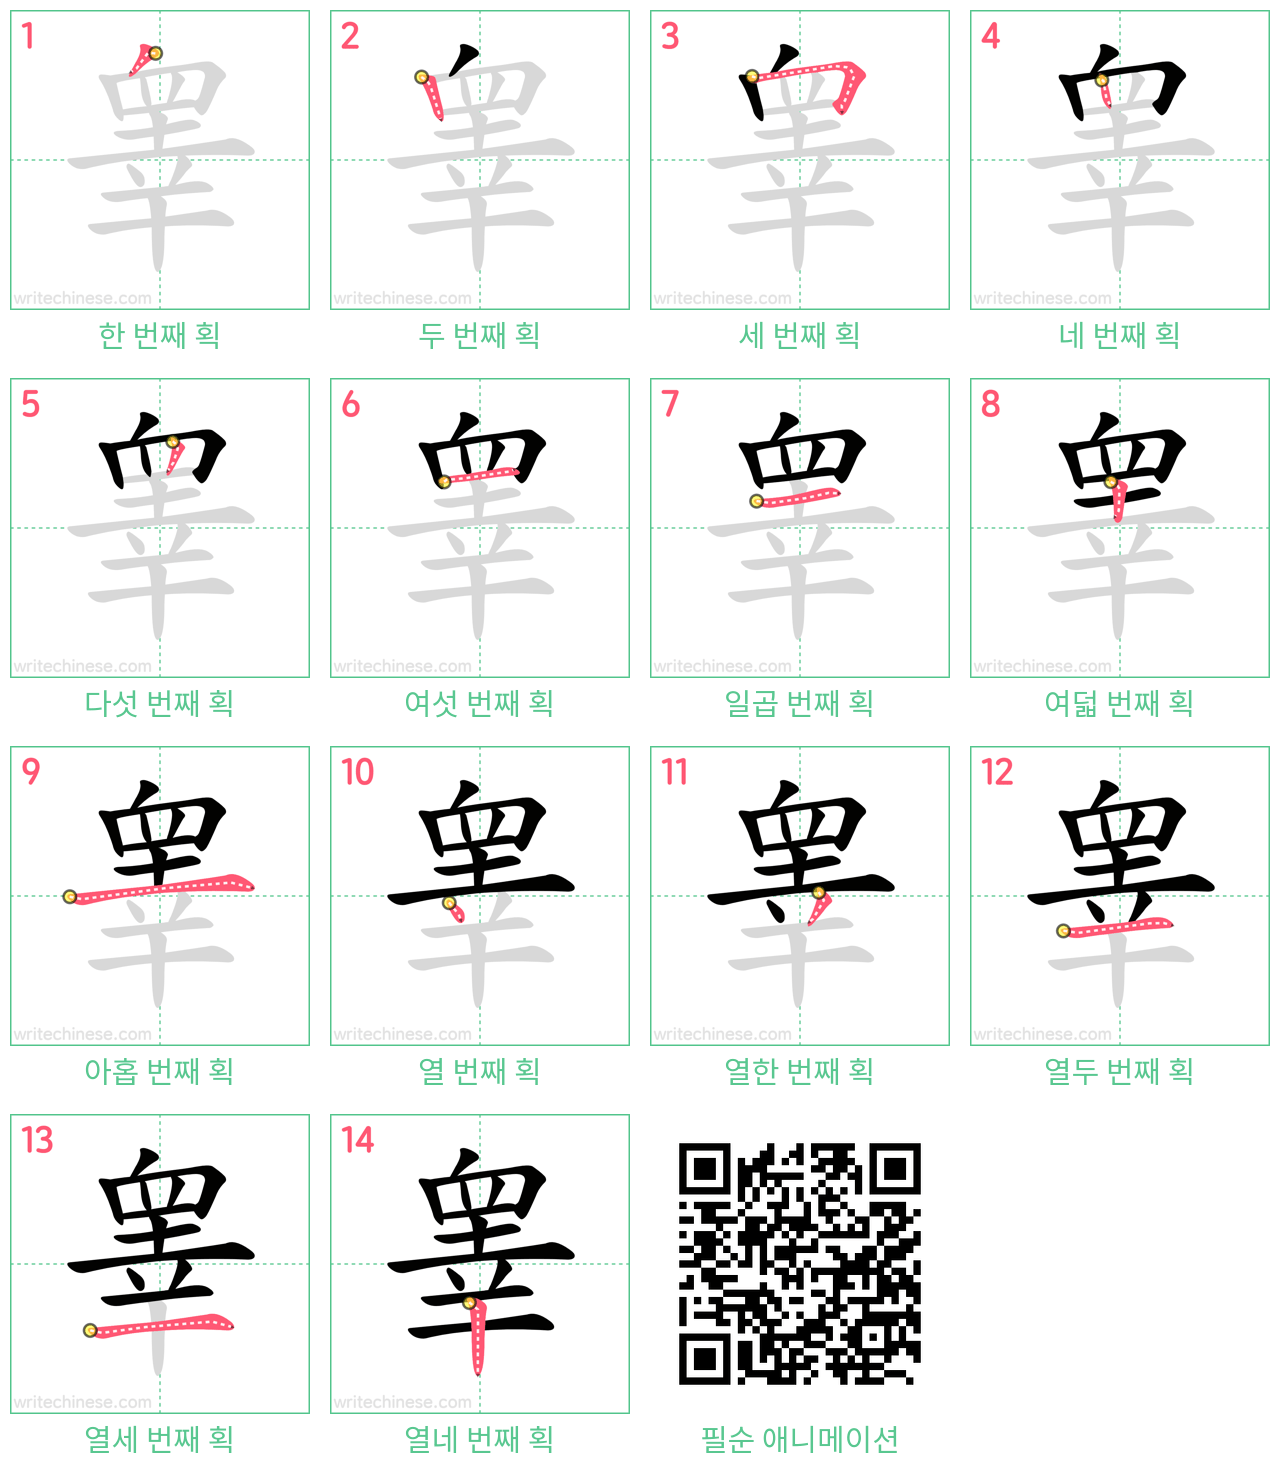 睾 step-by-step stroke order diagrams